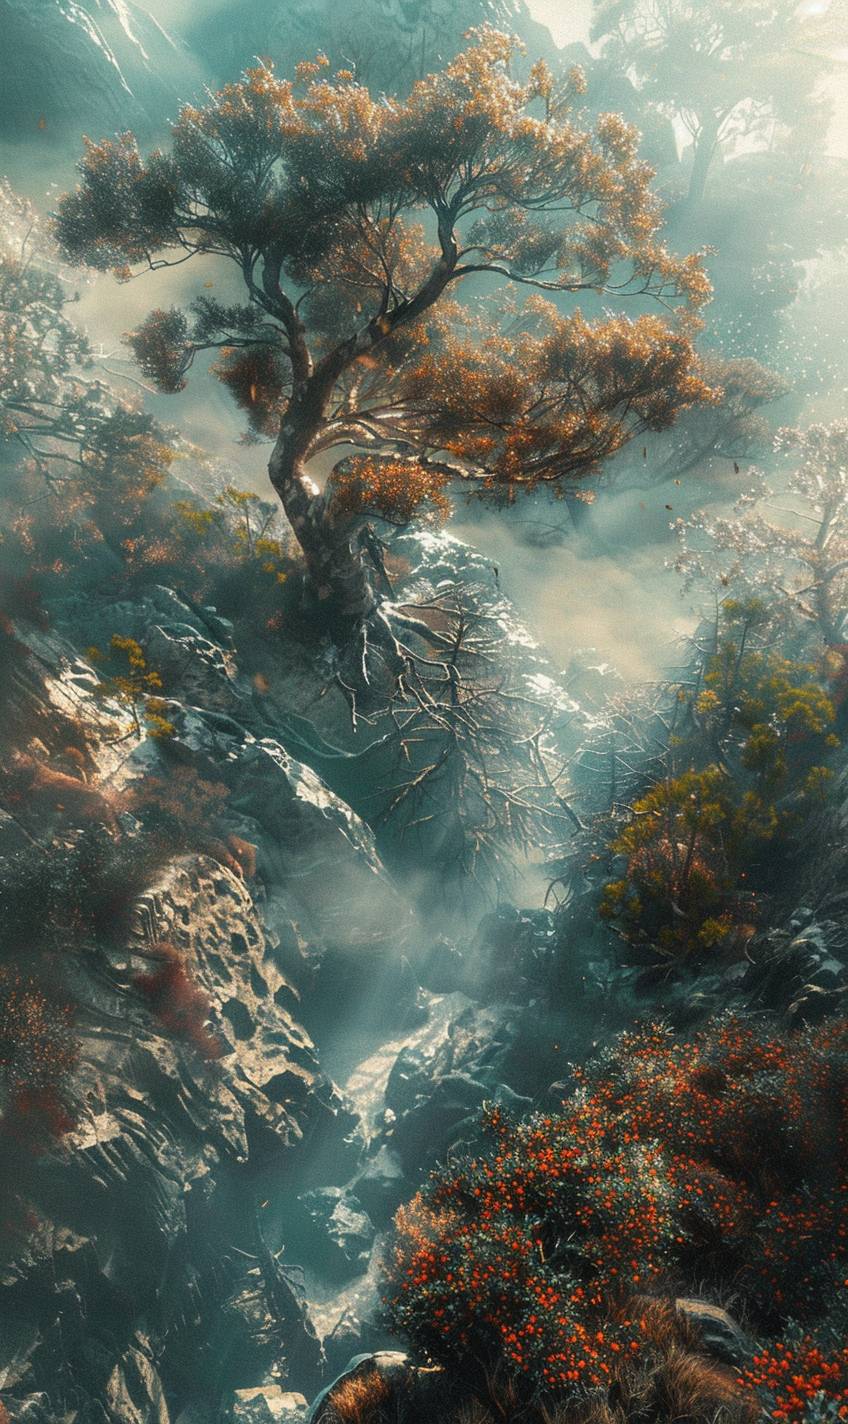 Filip Hodasスタイルで、神秘的な森のそよ風